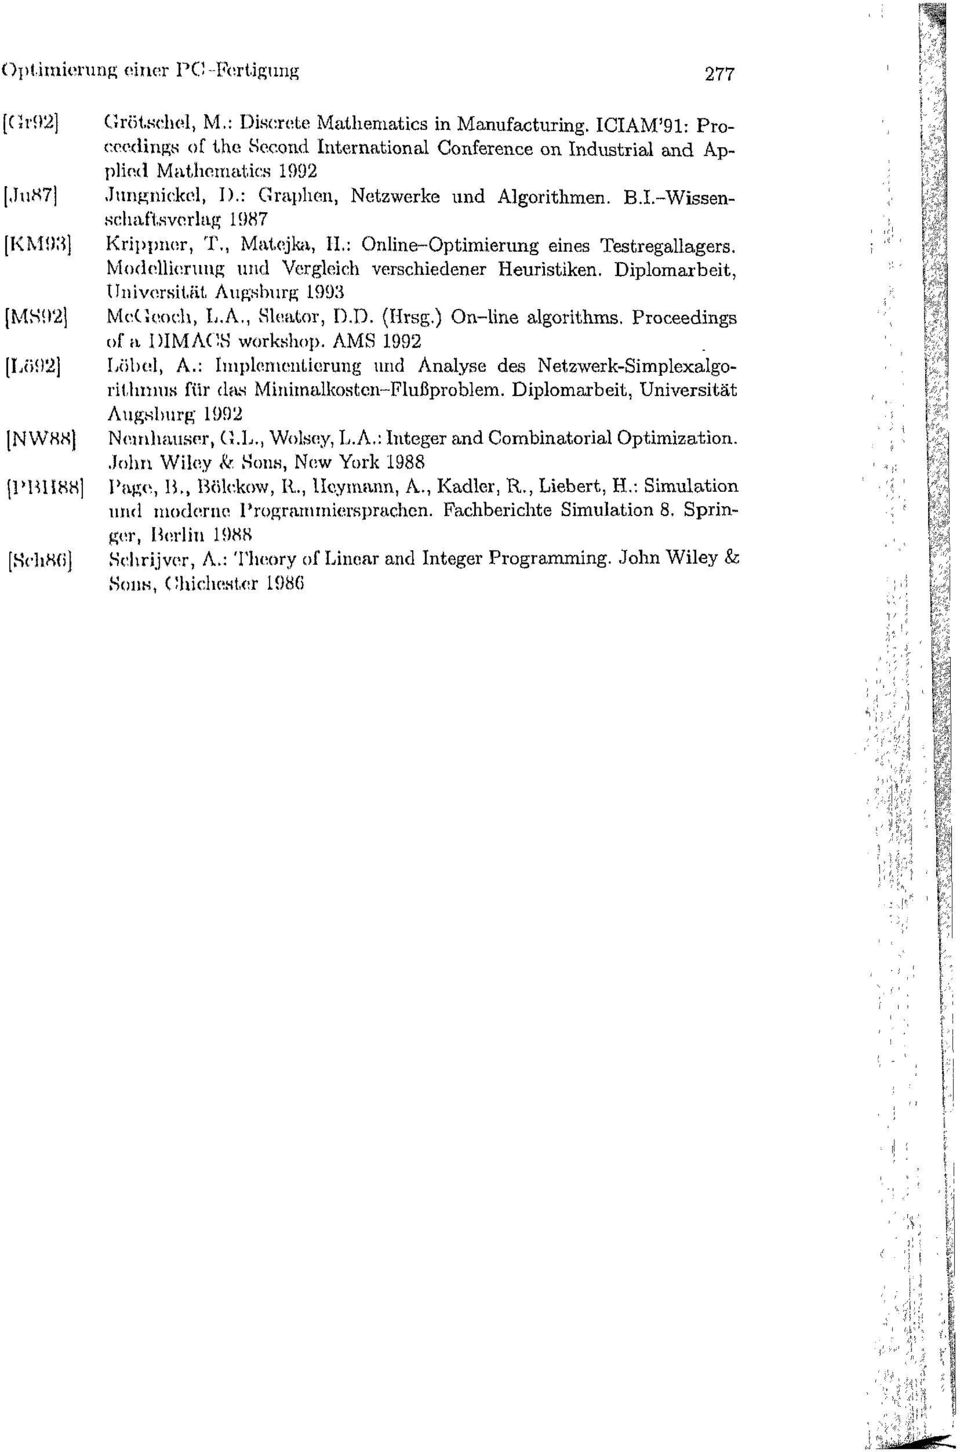 , Matejka, H.: Online-Optimierung eines Testregallagers. Modellierung und Vergleich verschiedener Heuristiken. Diplomarbeit, Universität Augsburg 1993 McGeoch, L.A., Sleator, D.D. (Hrsg.